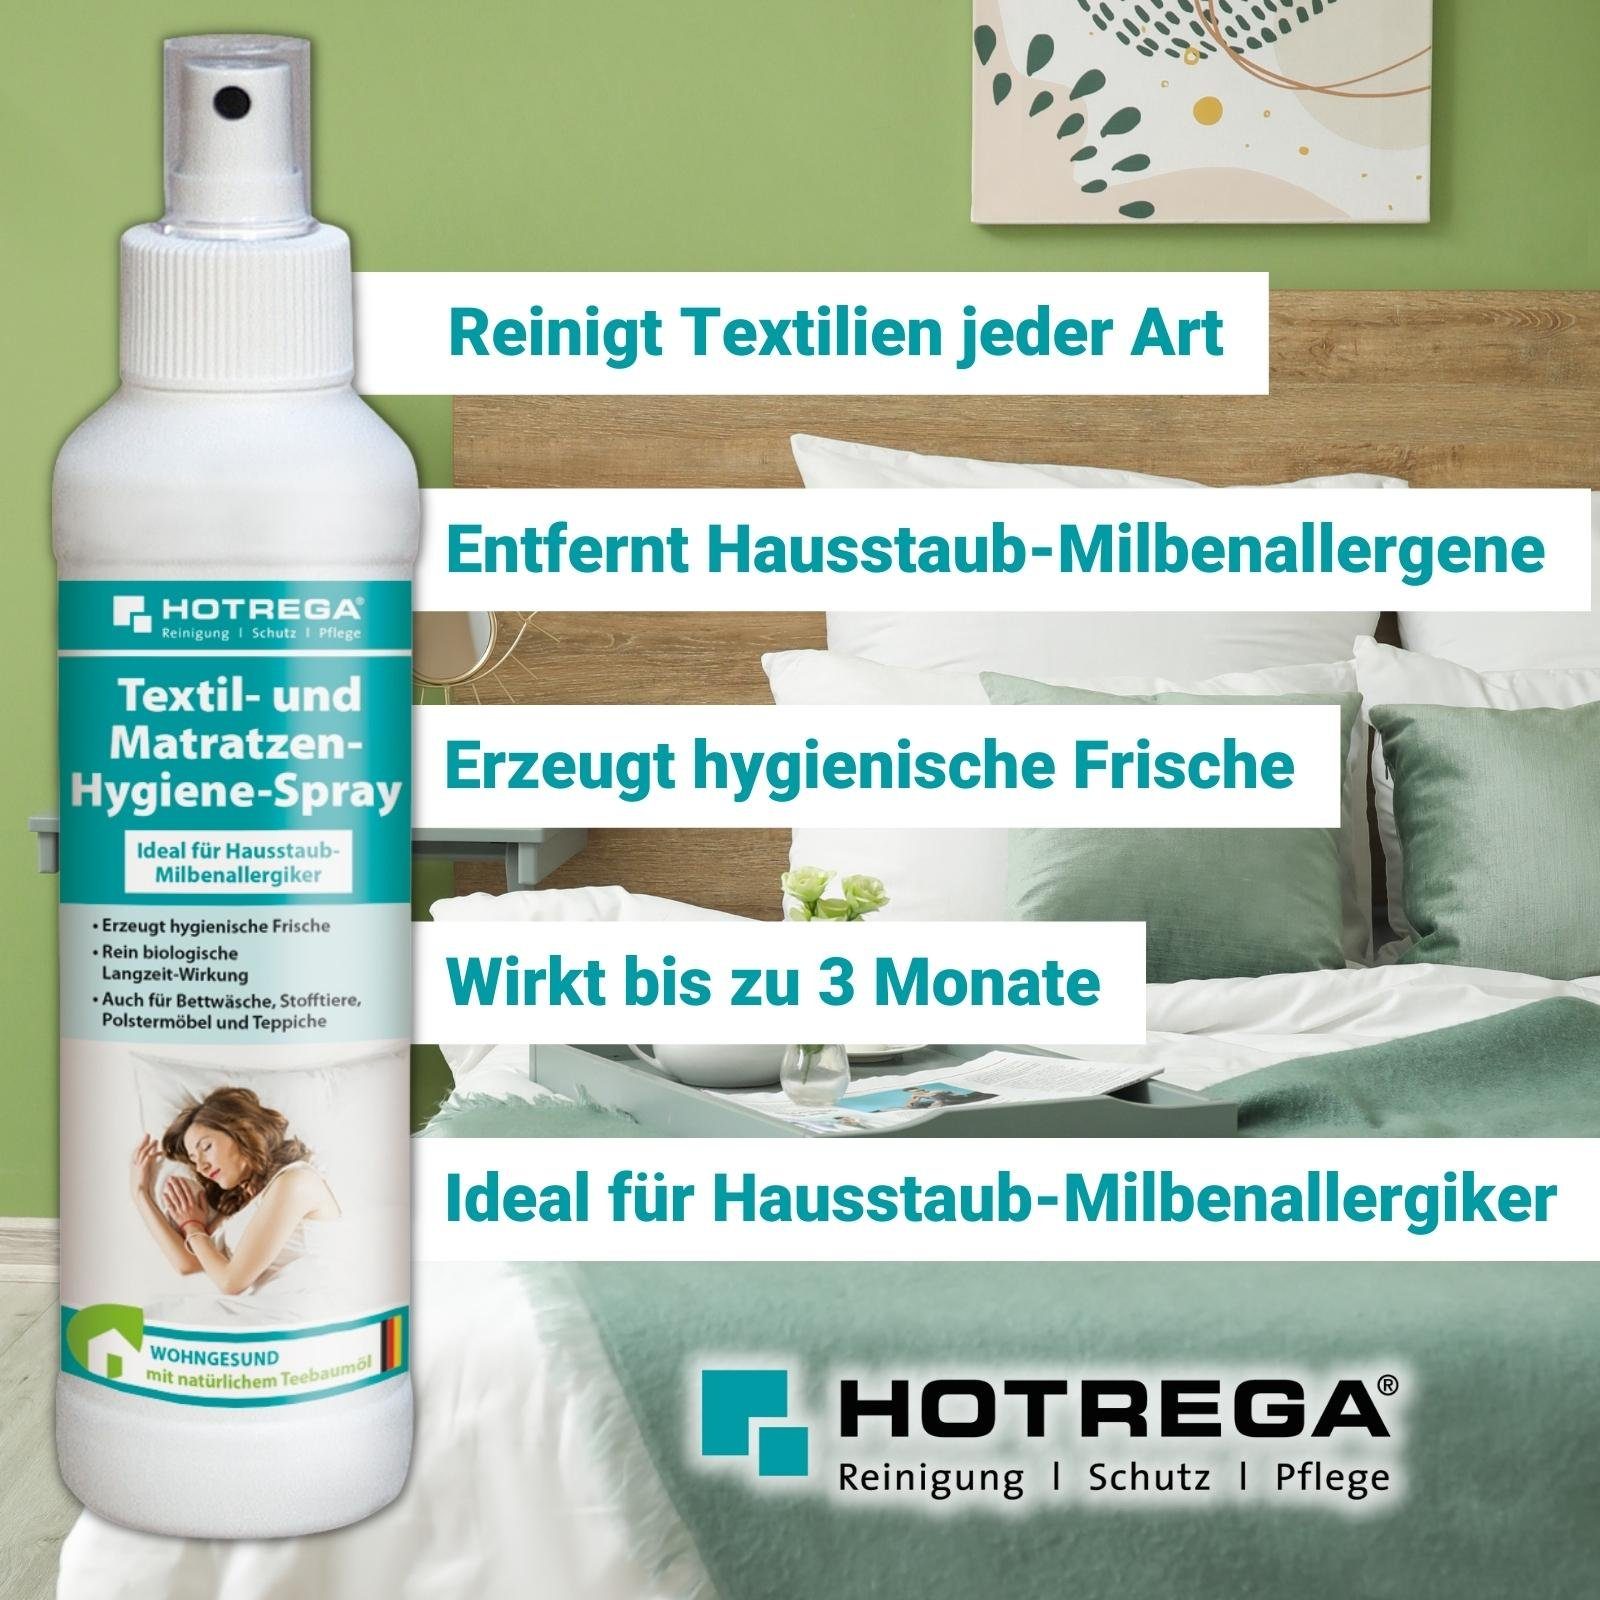 Matratzen-Hygiene-Spray und Textil- HOTREGA® 250 ml Universalreiniger